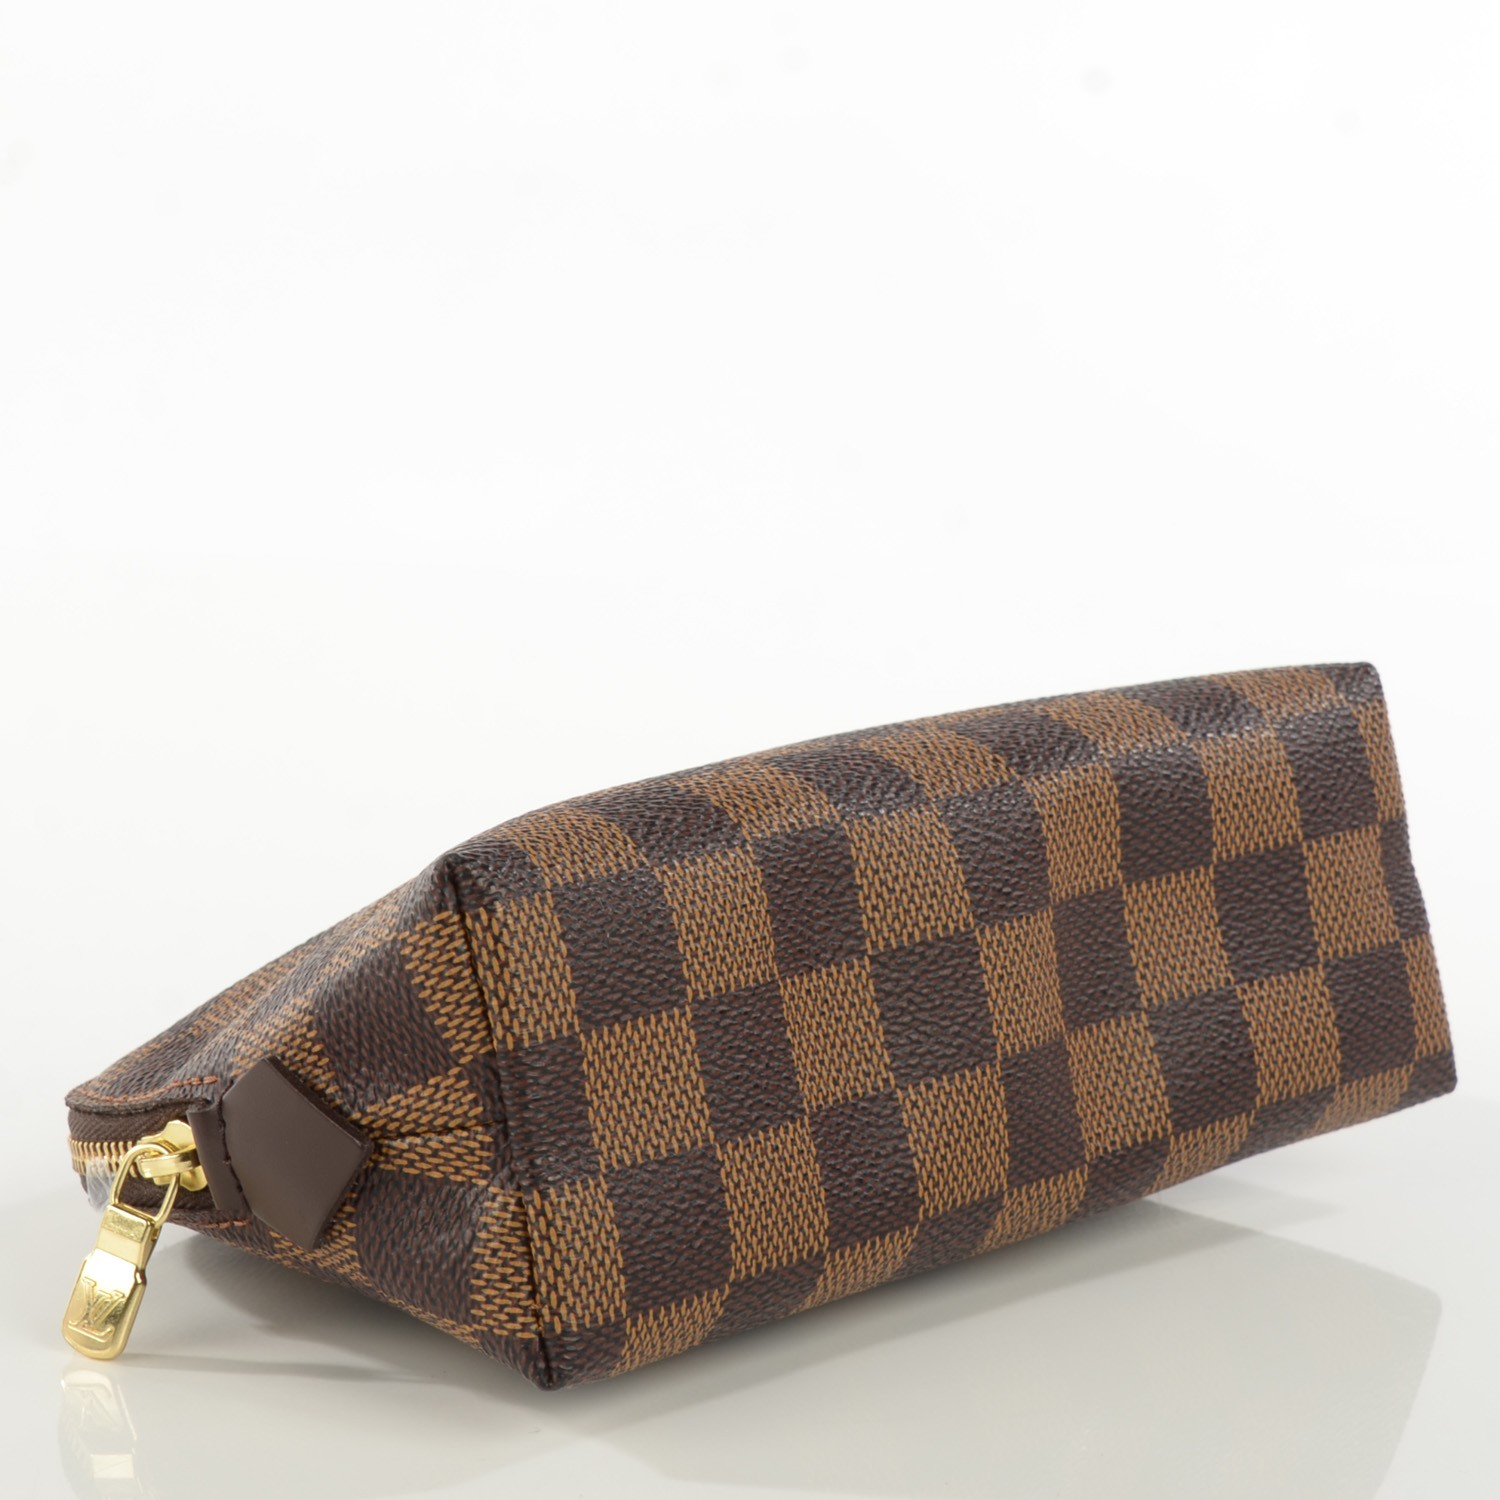 Louis Vuitton Checkered Makeup Bag 0661